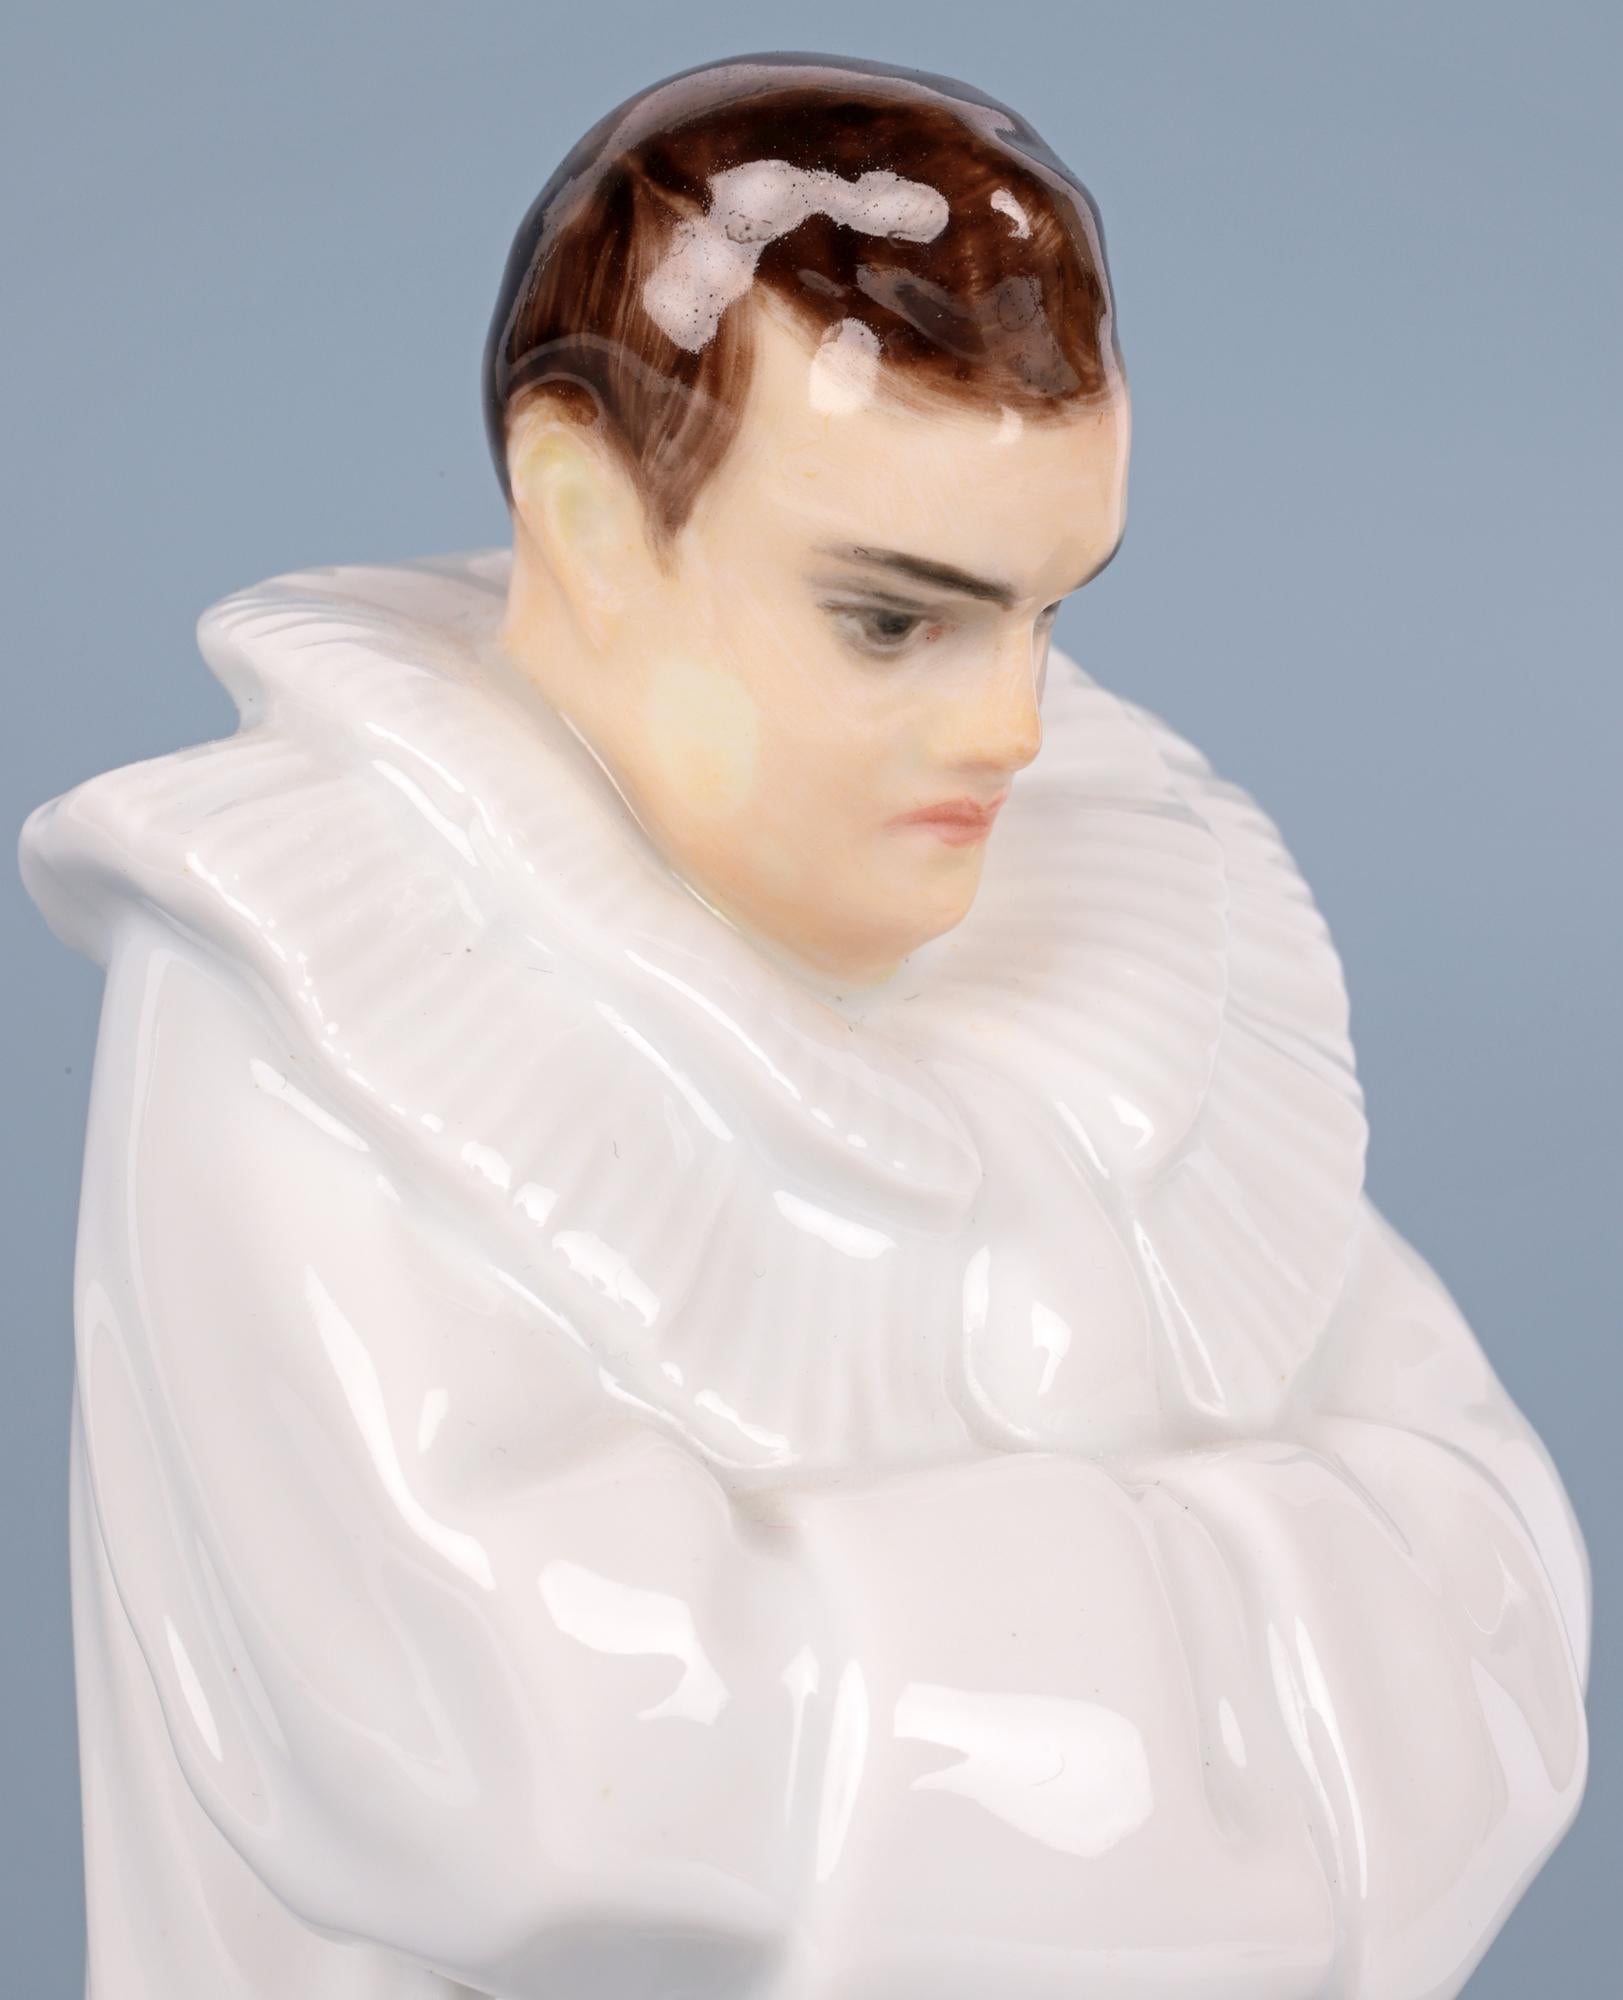 Une superbe et élégante figurine en porcelaine allemande Rosenthal Art Déco d'Enrico Caruso par la célèbre designer Thekla Harth-Altmann (1887-1998) et conçue en 1913. La figurine représente le ténor et chanteur d'opéra italien Enrico Caruso